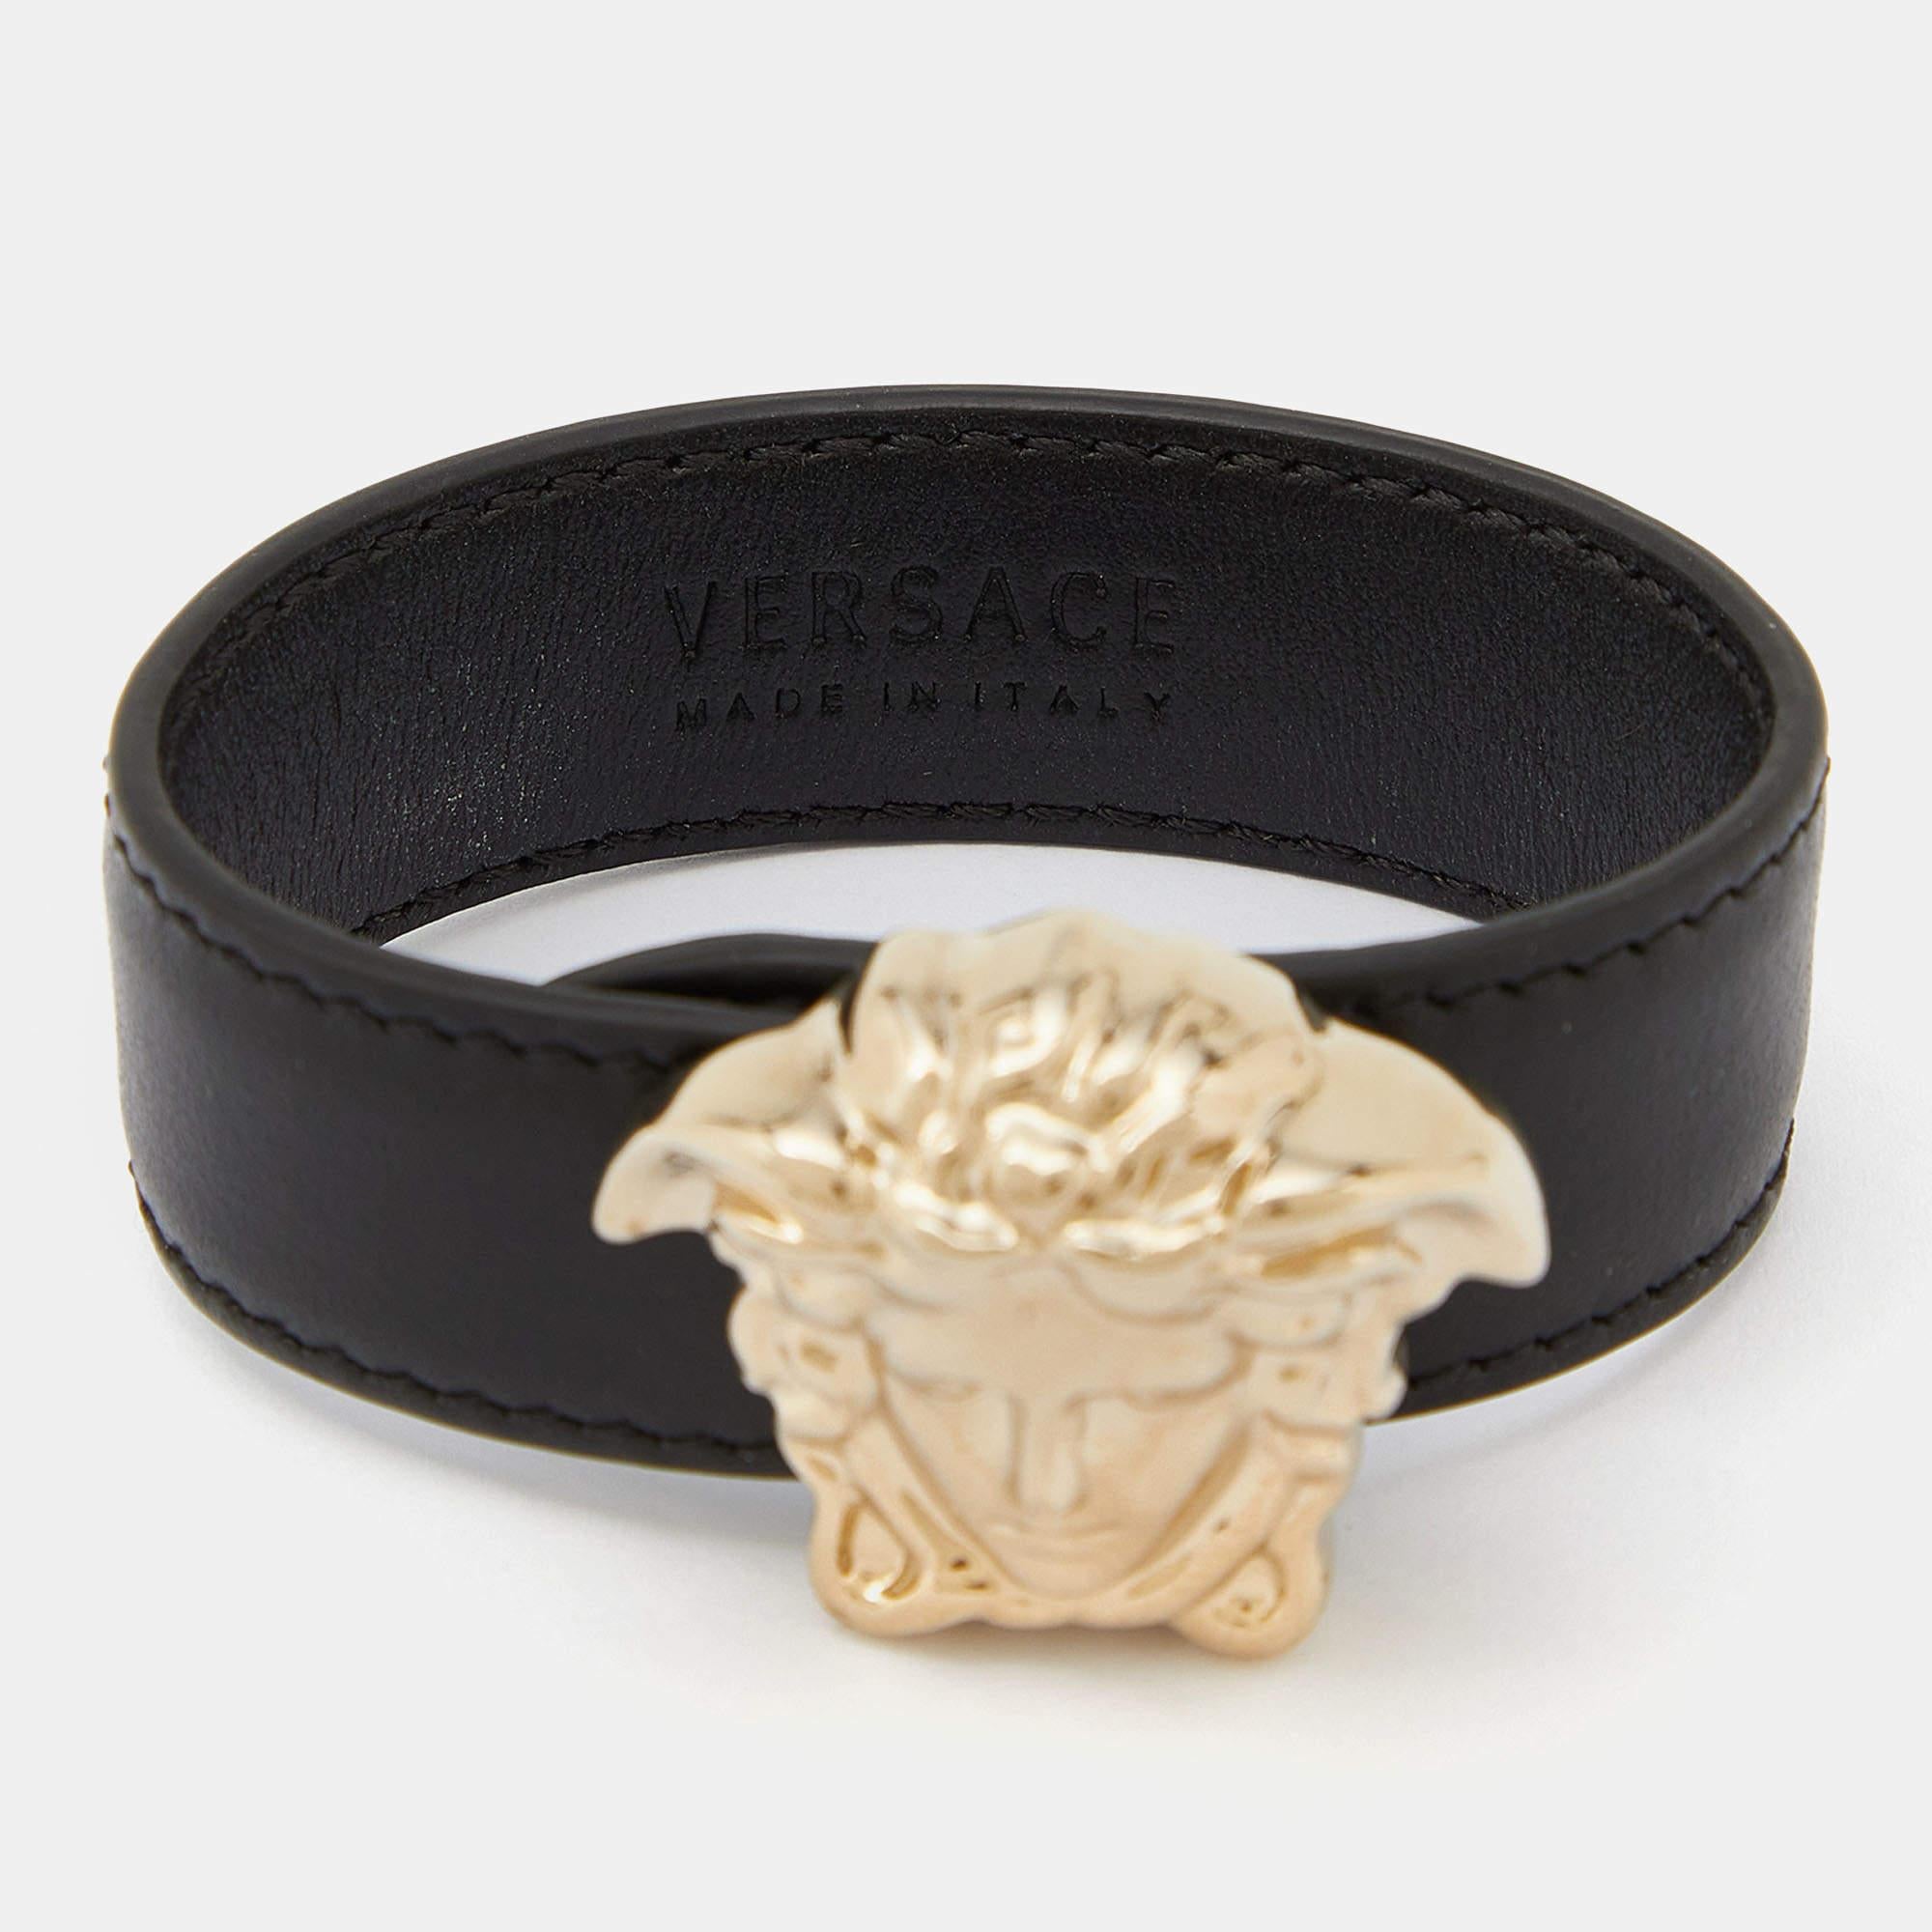 Ultramodern und schick im Design, zeigt dieses Versace-Armband zeitgenössische Mode. Das luxuriöse Design ist mit verschiedenen Elementen versehen, die der Kreation einen edlen Touch verleihen. Dieses süße Stück sieht toll aus, wenn es mit anderen